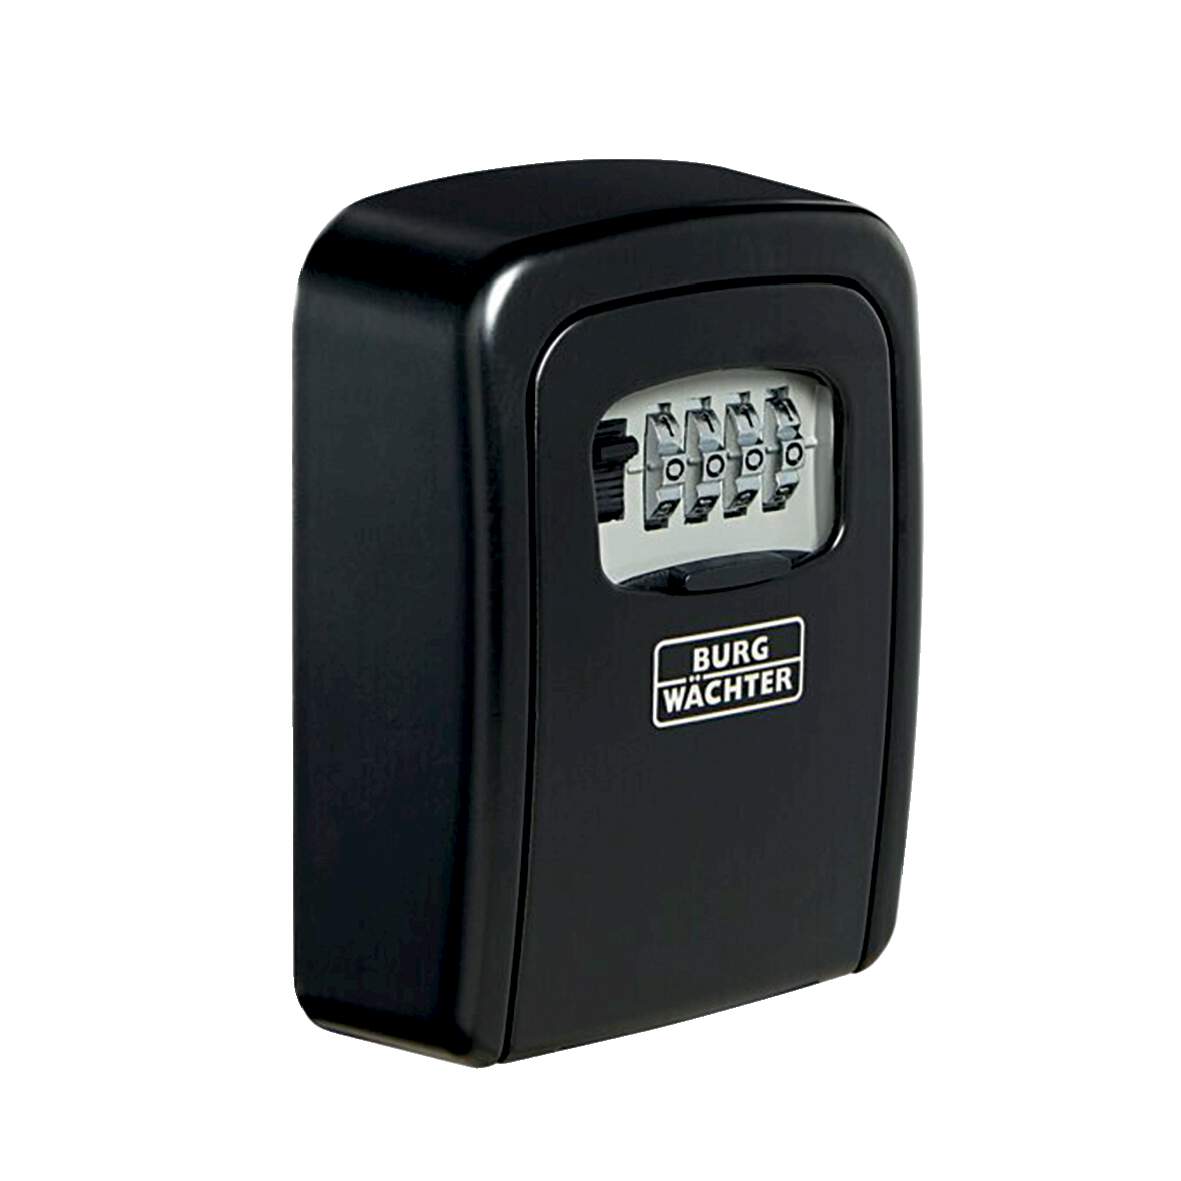 1286466 - Schlüsselsafe Key Safe 30 SB schwarz, BxHxT: 90x120x40mm